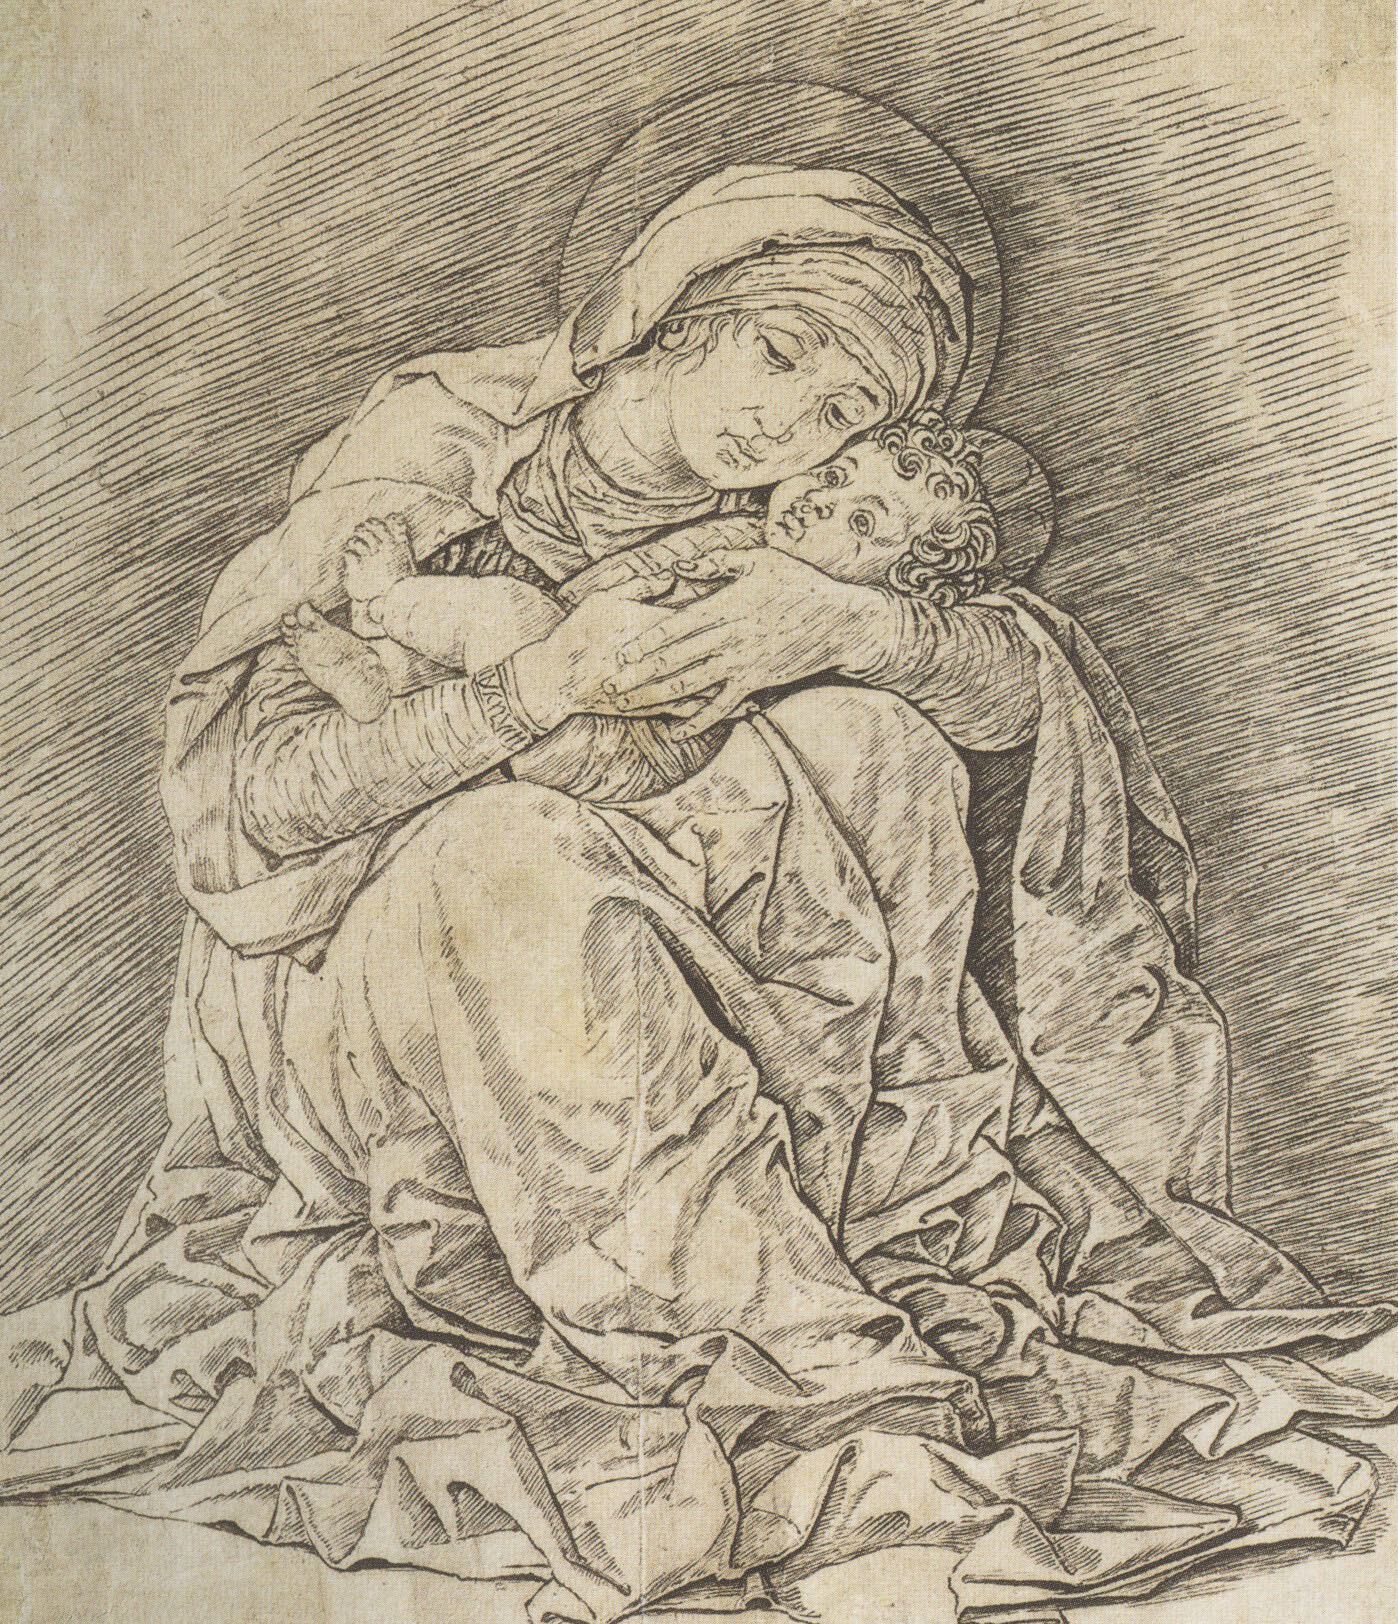 Андреа мантенья. "Мадонна с Младенцем". около 1485-1491.